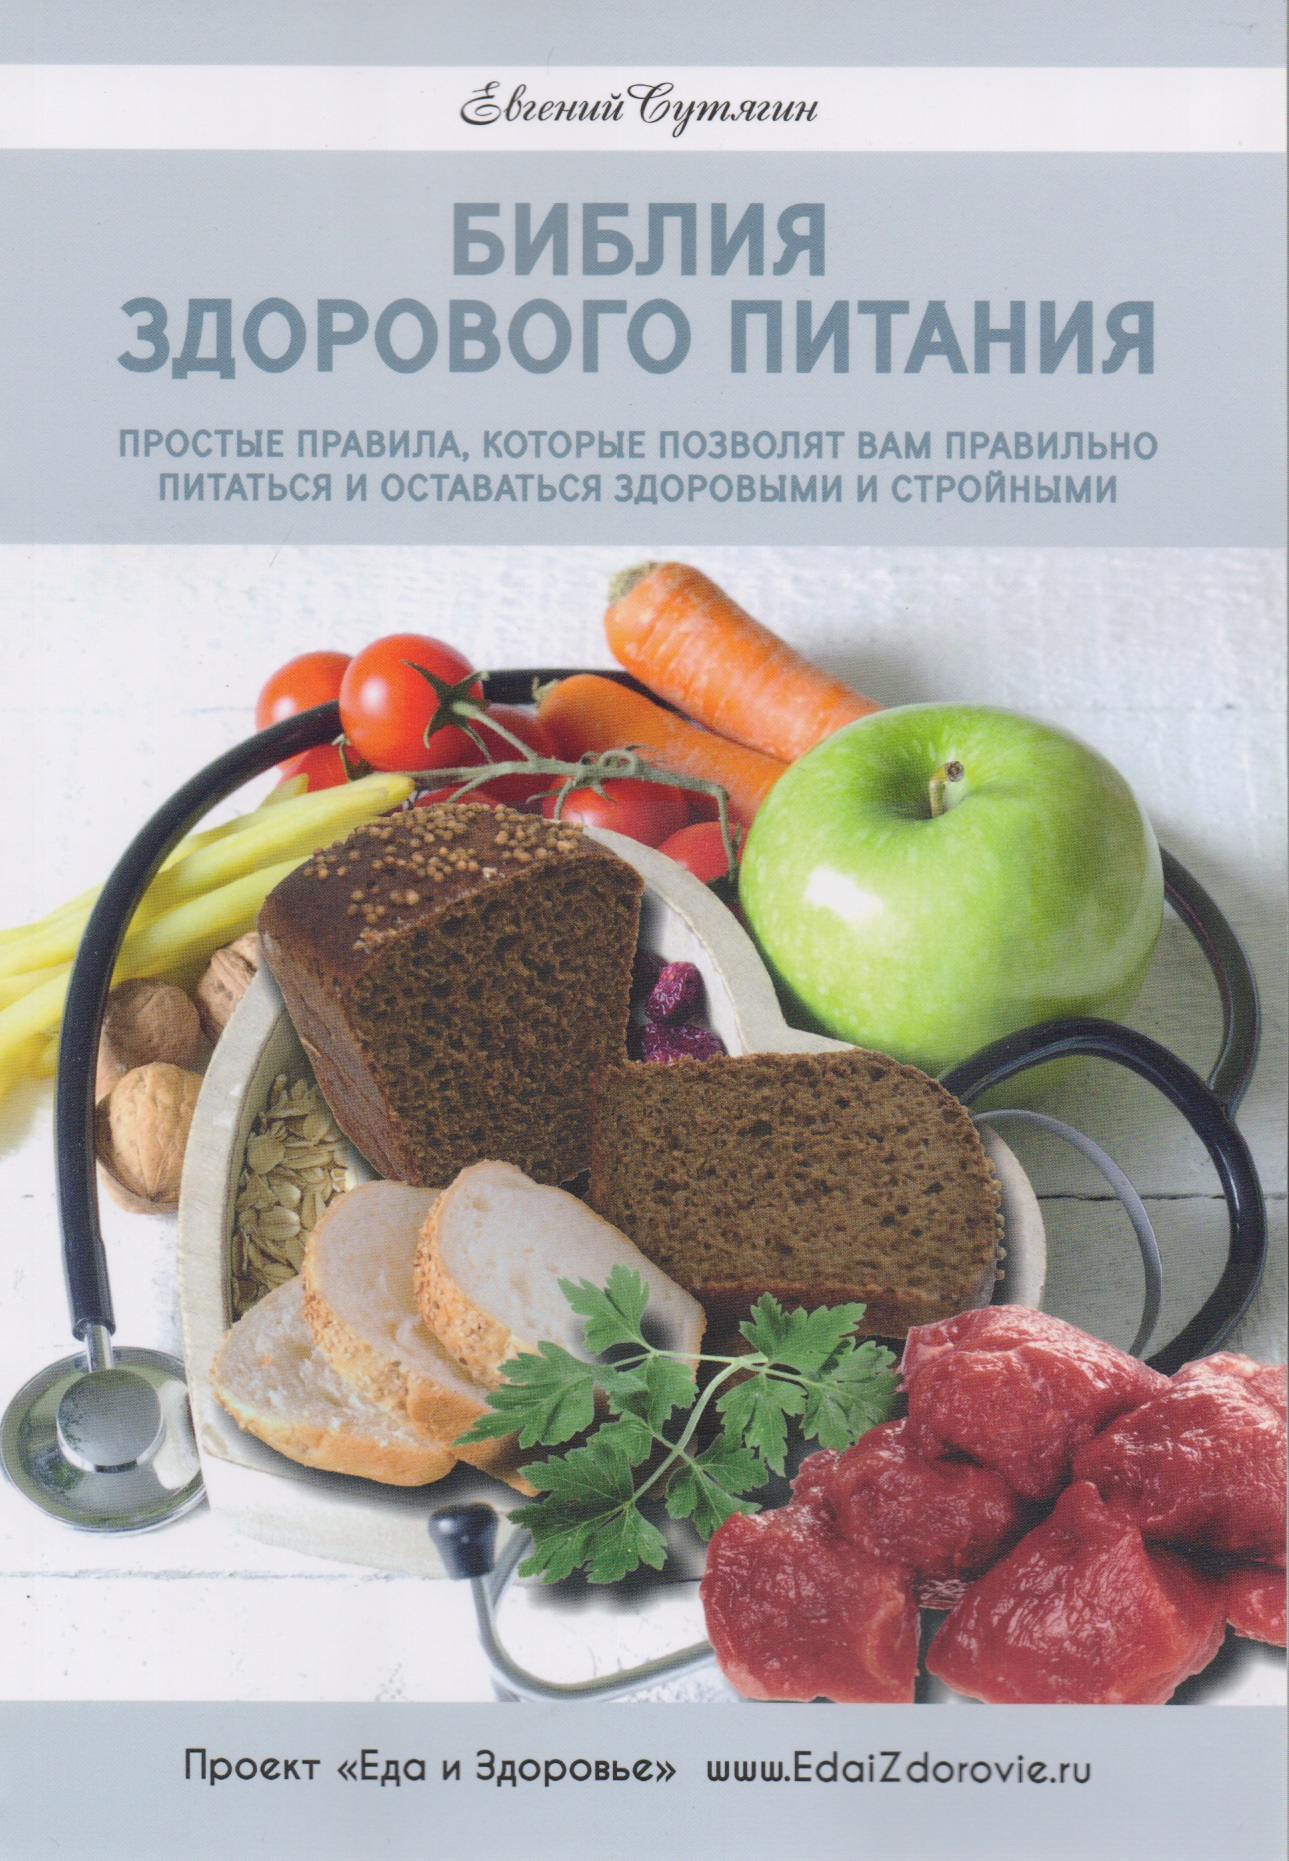 Библия здорового питания уиллет уолтер химия здорового питания